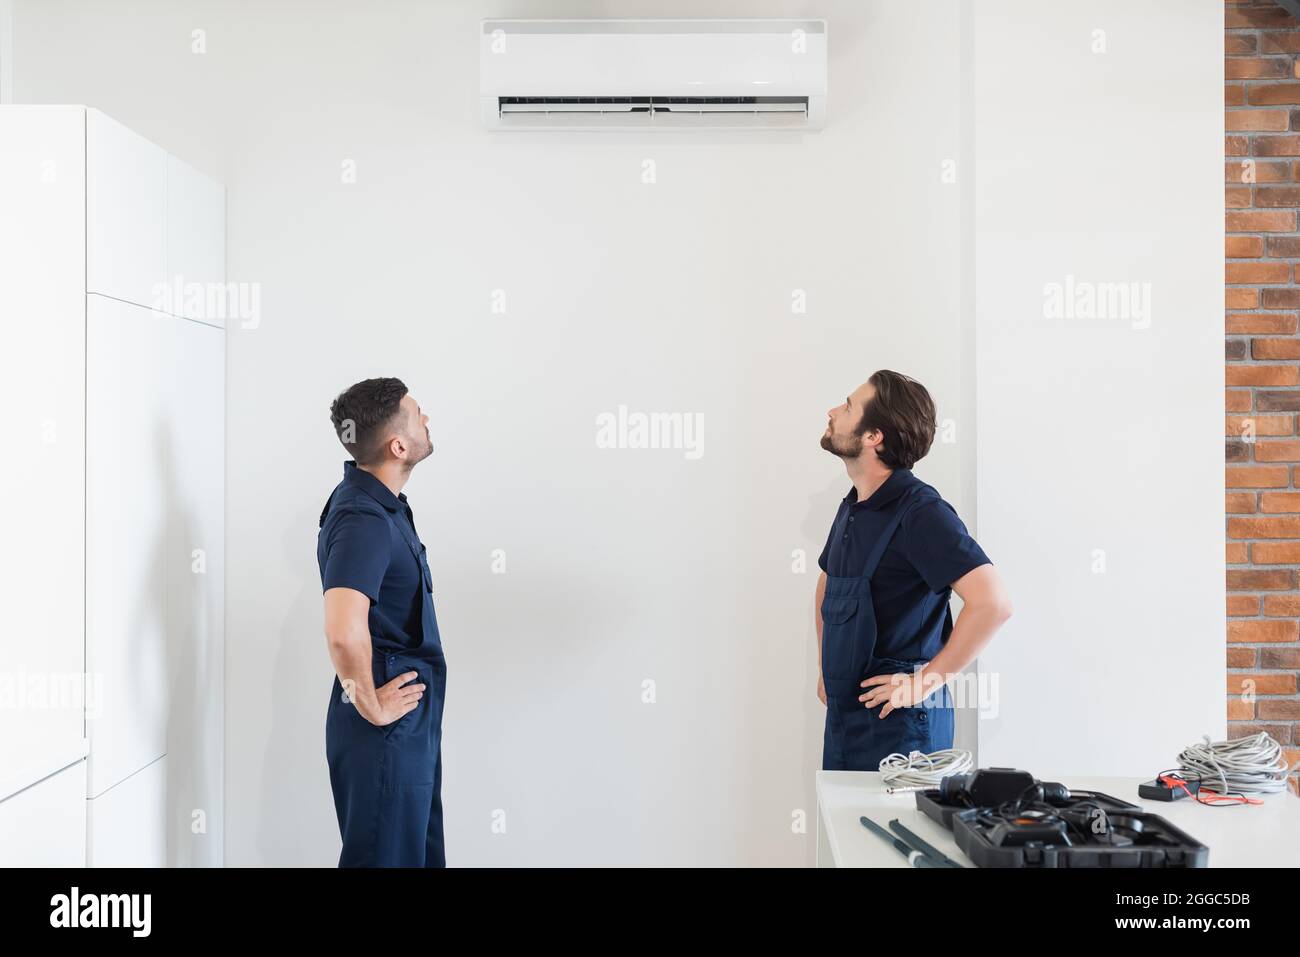 Die Reparaturleute schauten sich die Klimaanlage an der weißen Wand in der  Küche an Stockfotografie - Alamy